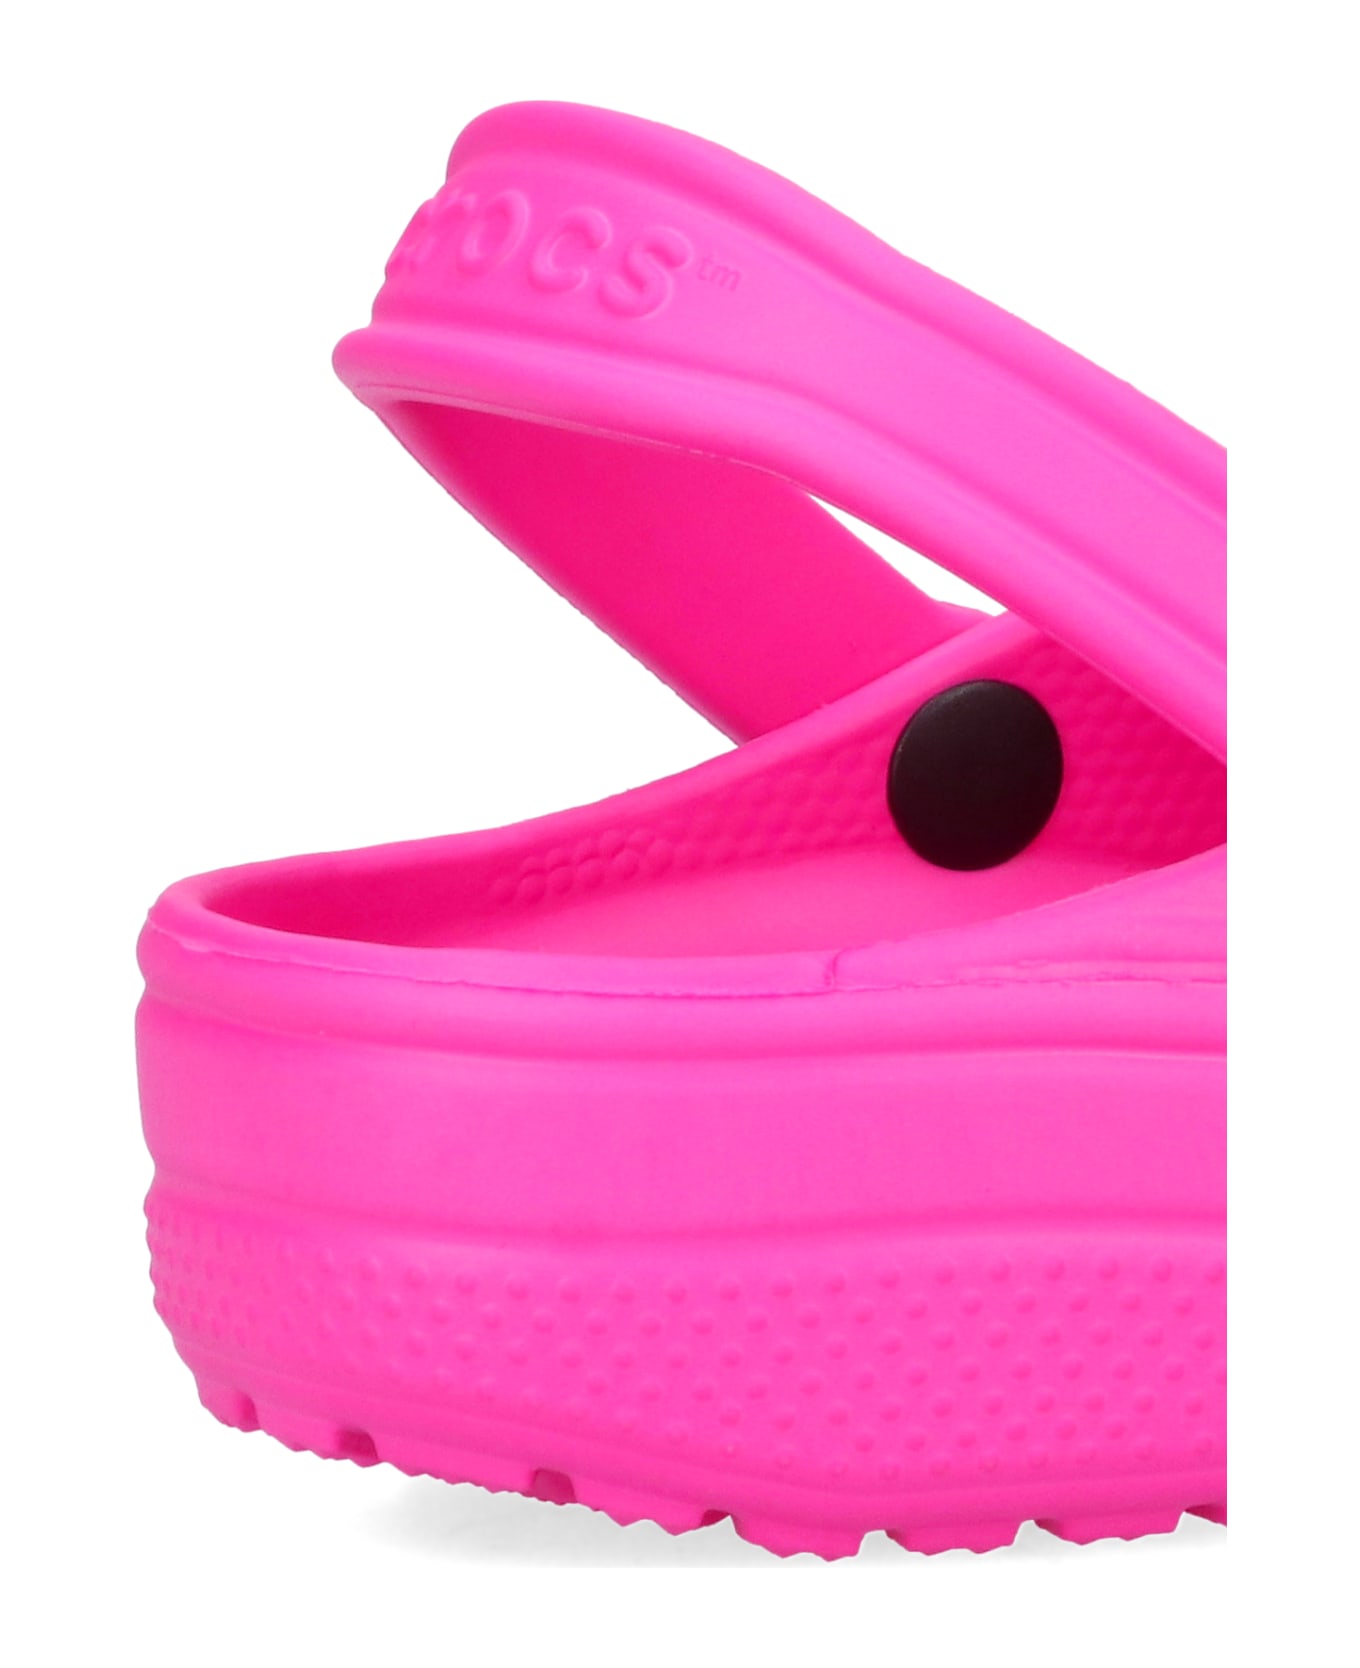 Crocs 'classic' Mules - Pink